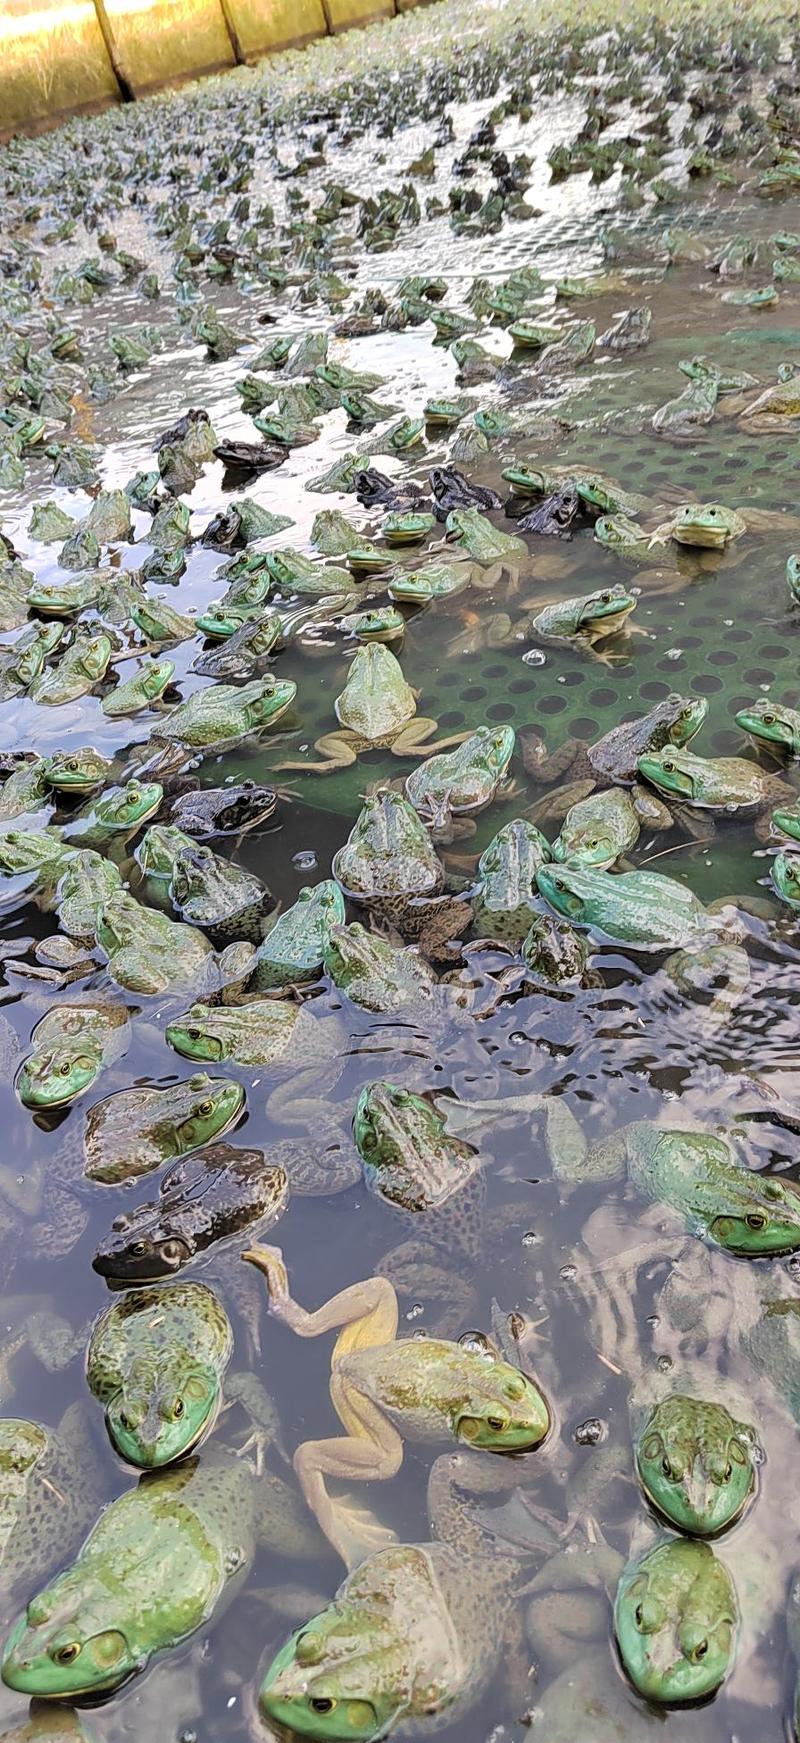 中国长寿之乡，广西省贺州市，用山泉水养出的牛蛙。口感很好